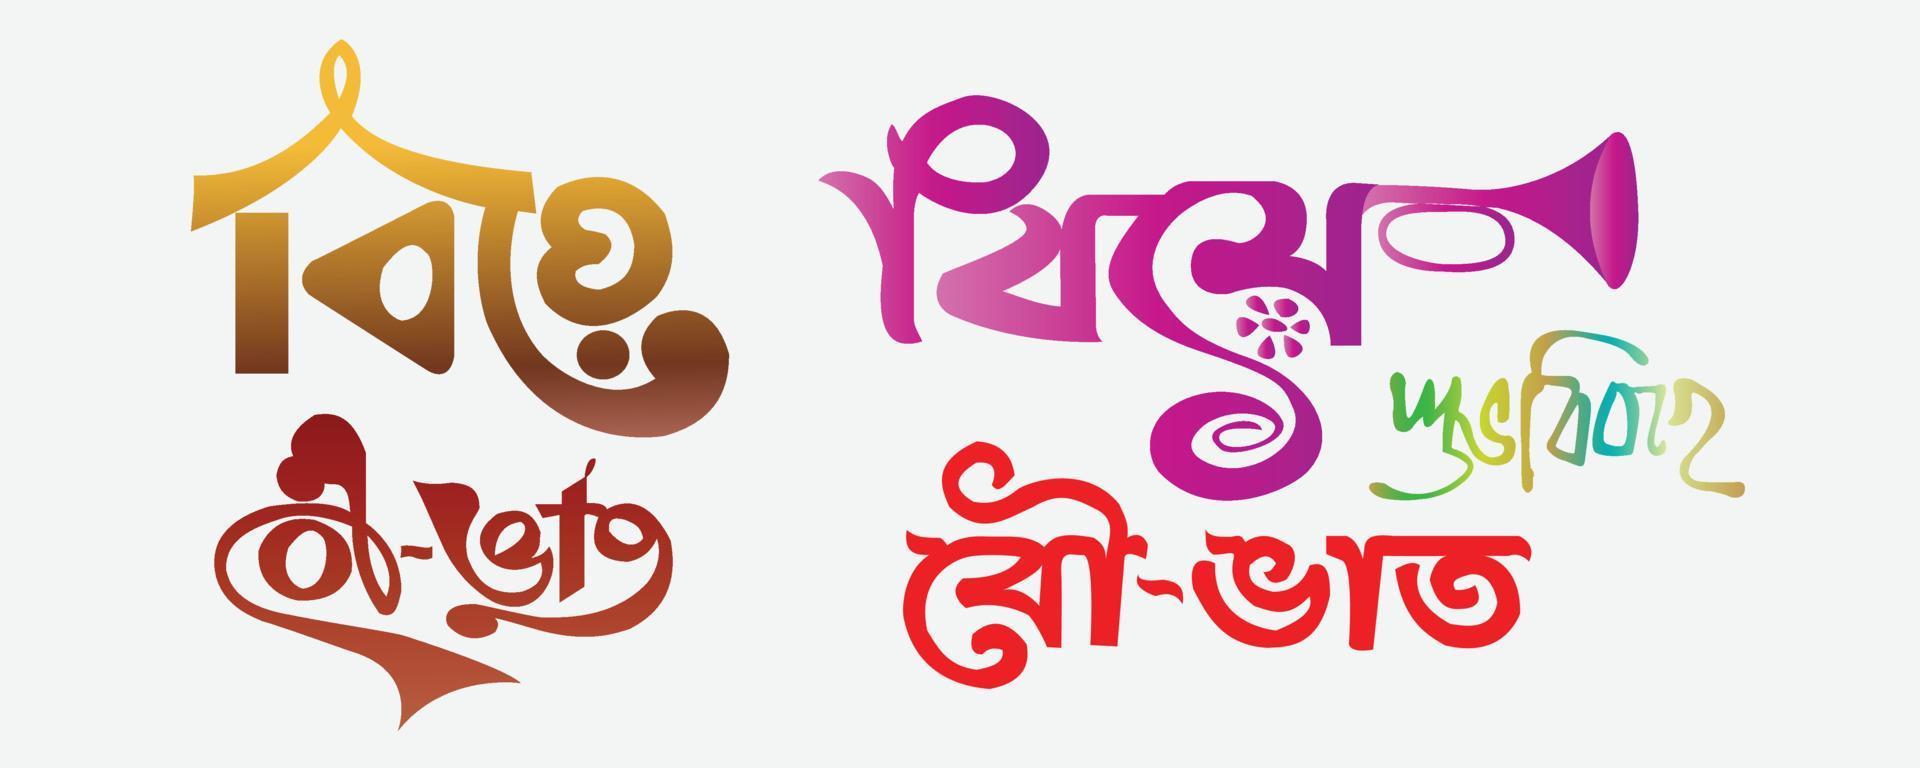 efeito de texto de casamento bengali tipografia shubho bibaho, tipografia bengali - tradução de casamento de texto, design de tipografia simples de casamento em marrom vetor